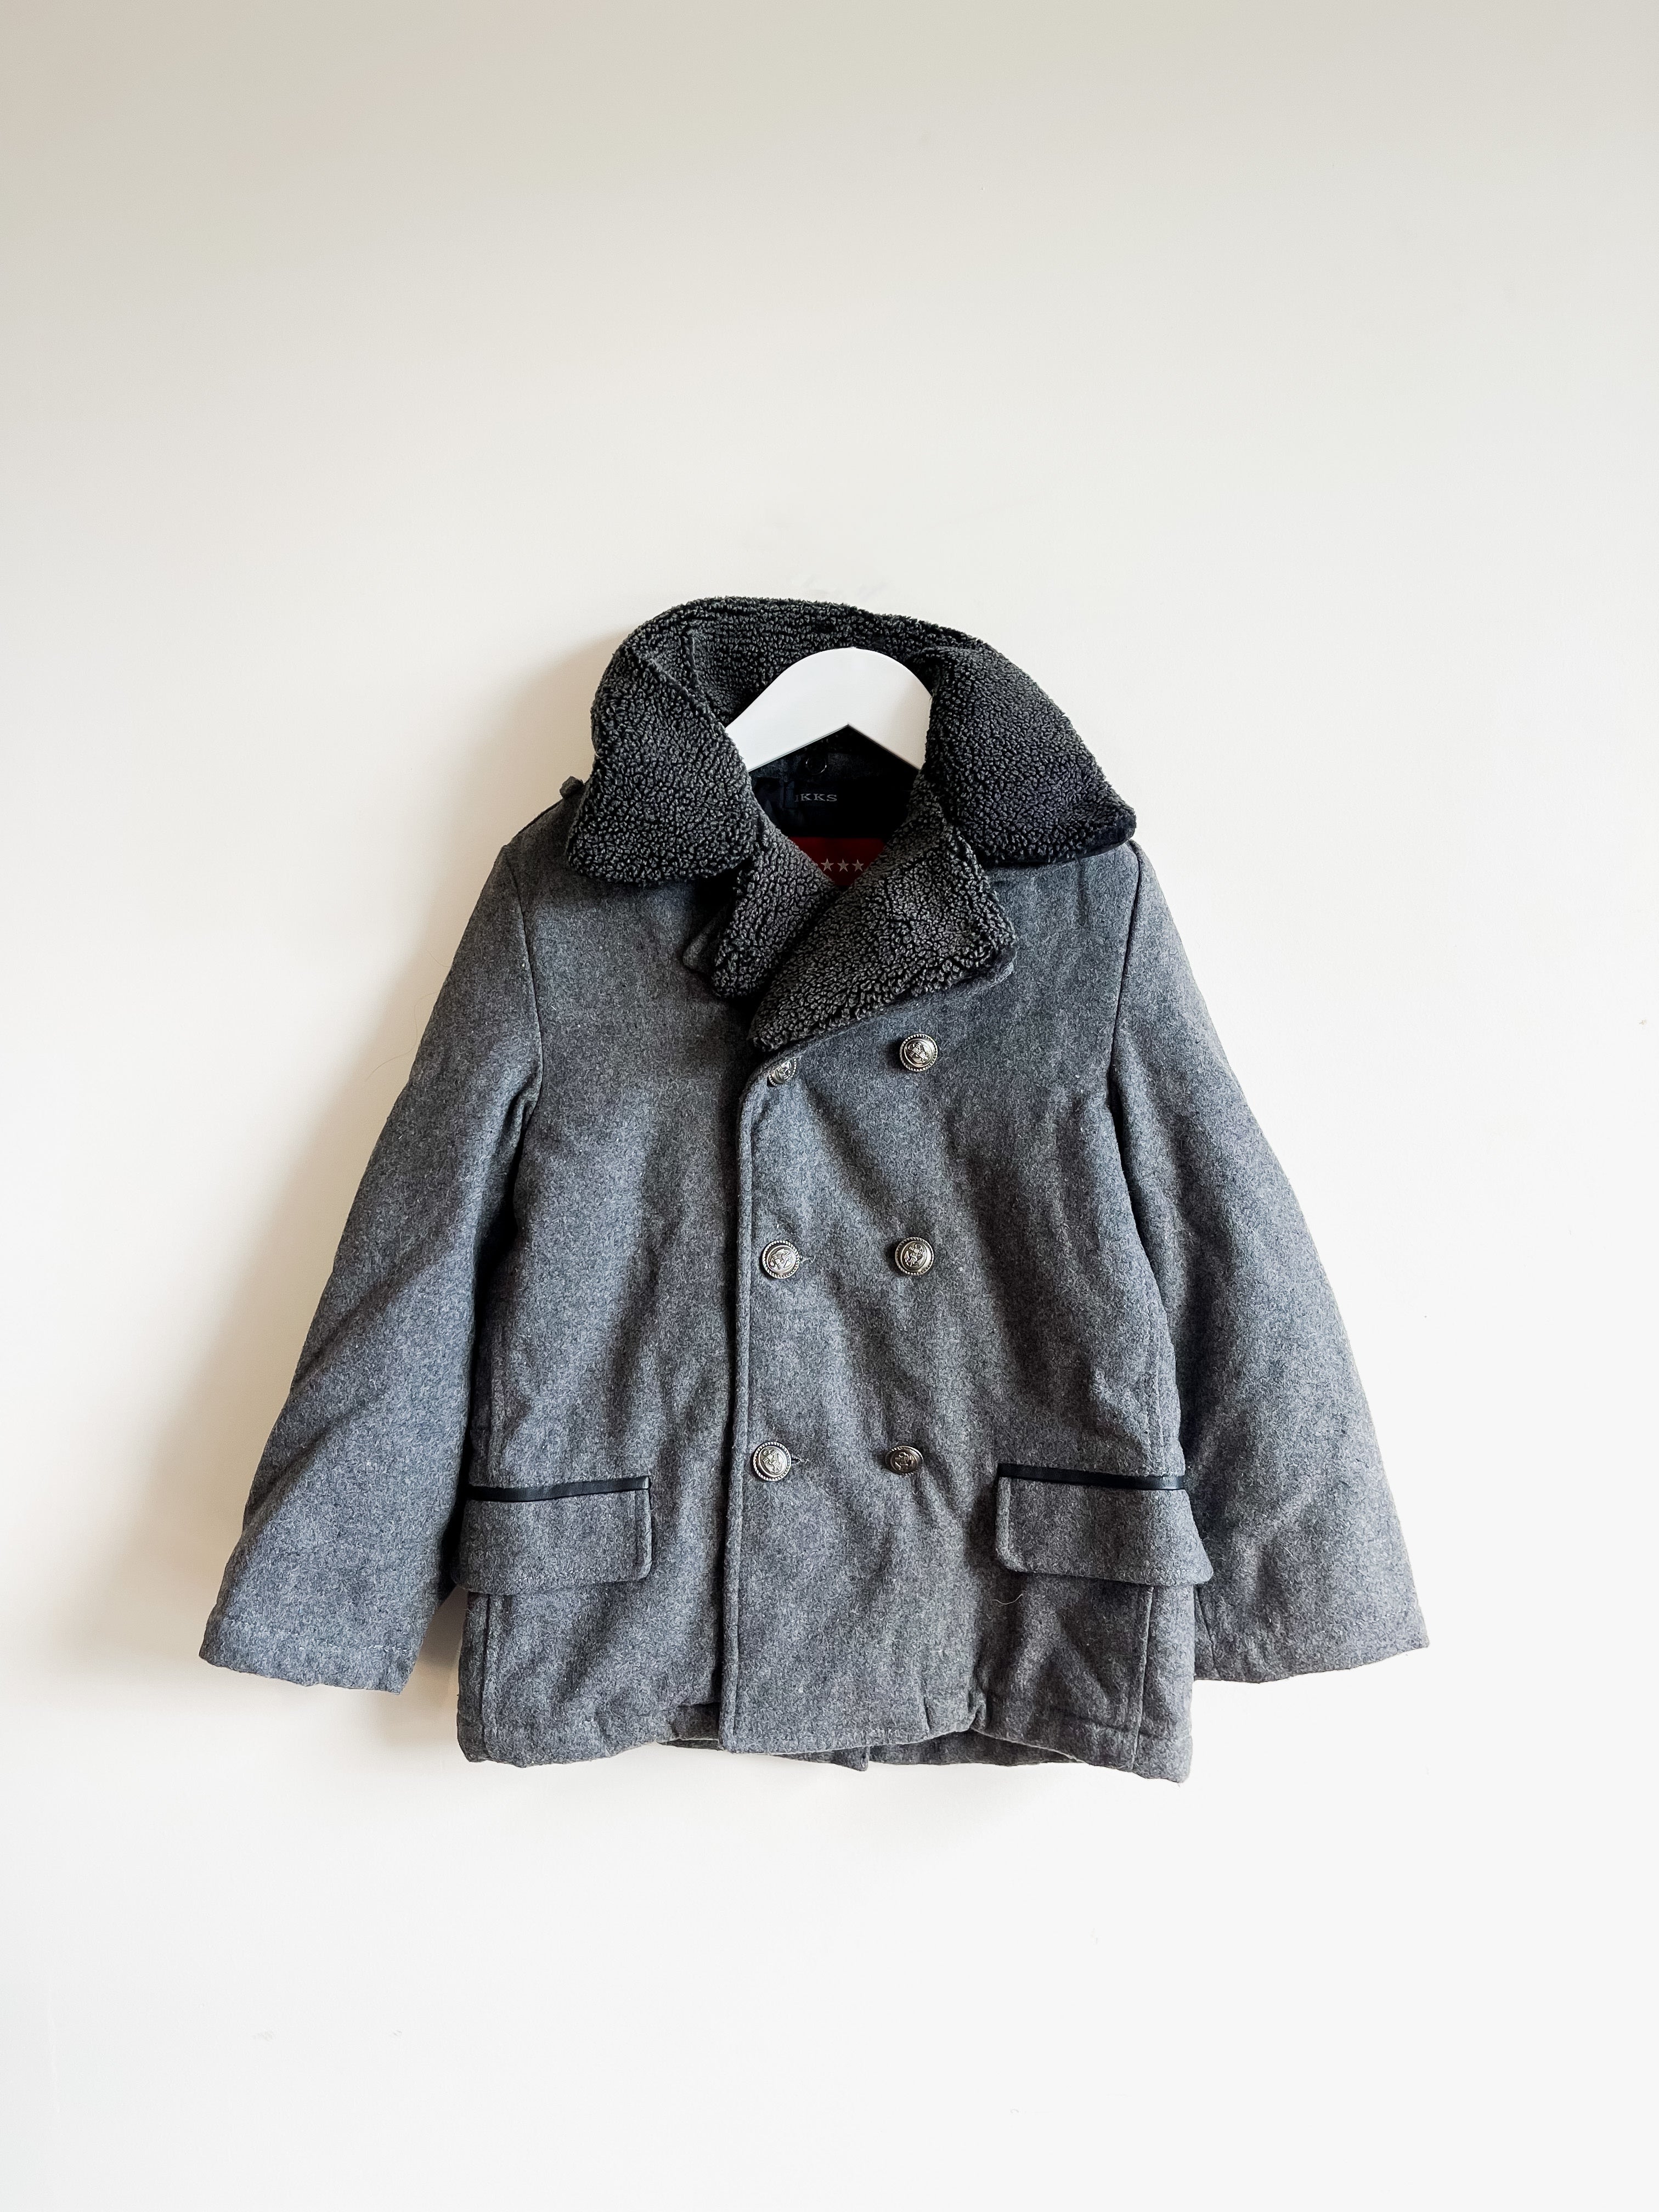 IKKS wool blend peacoat jacket (8y)